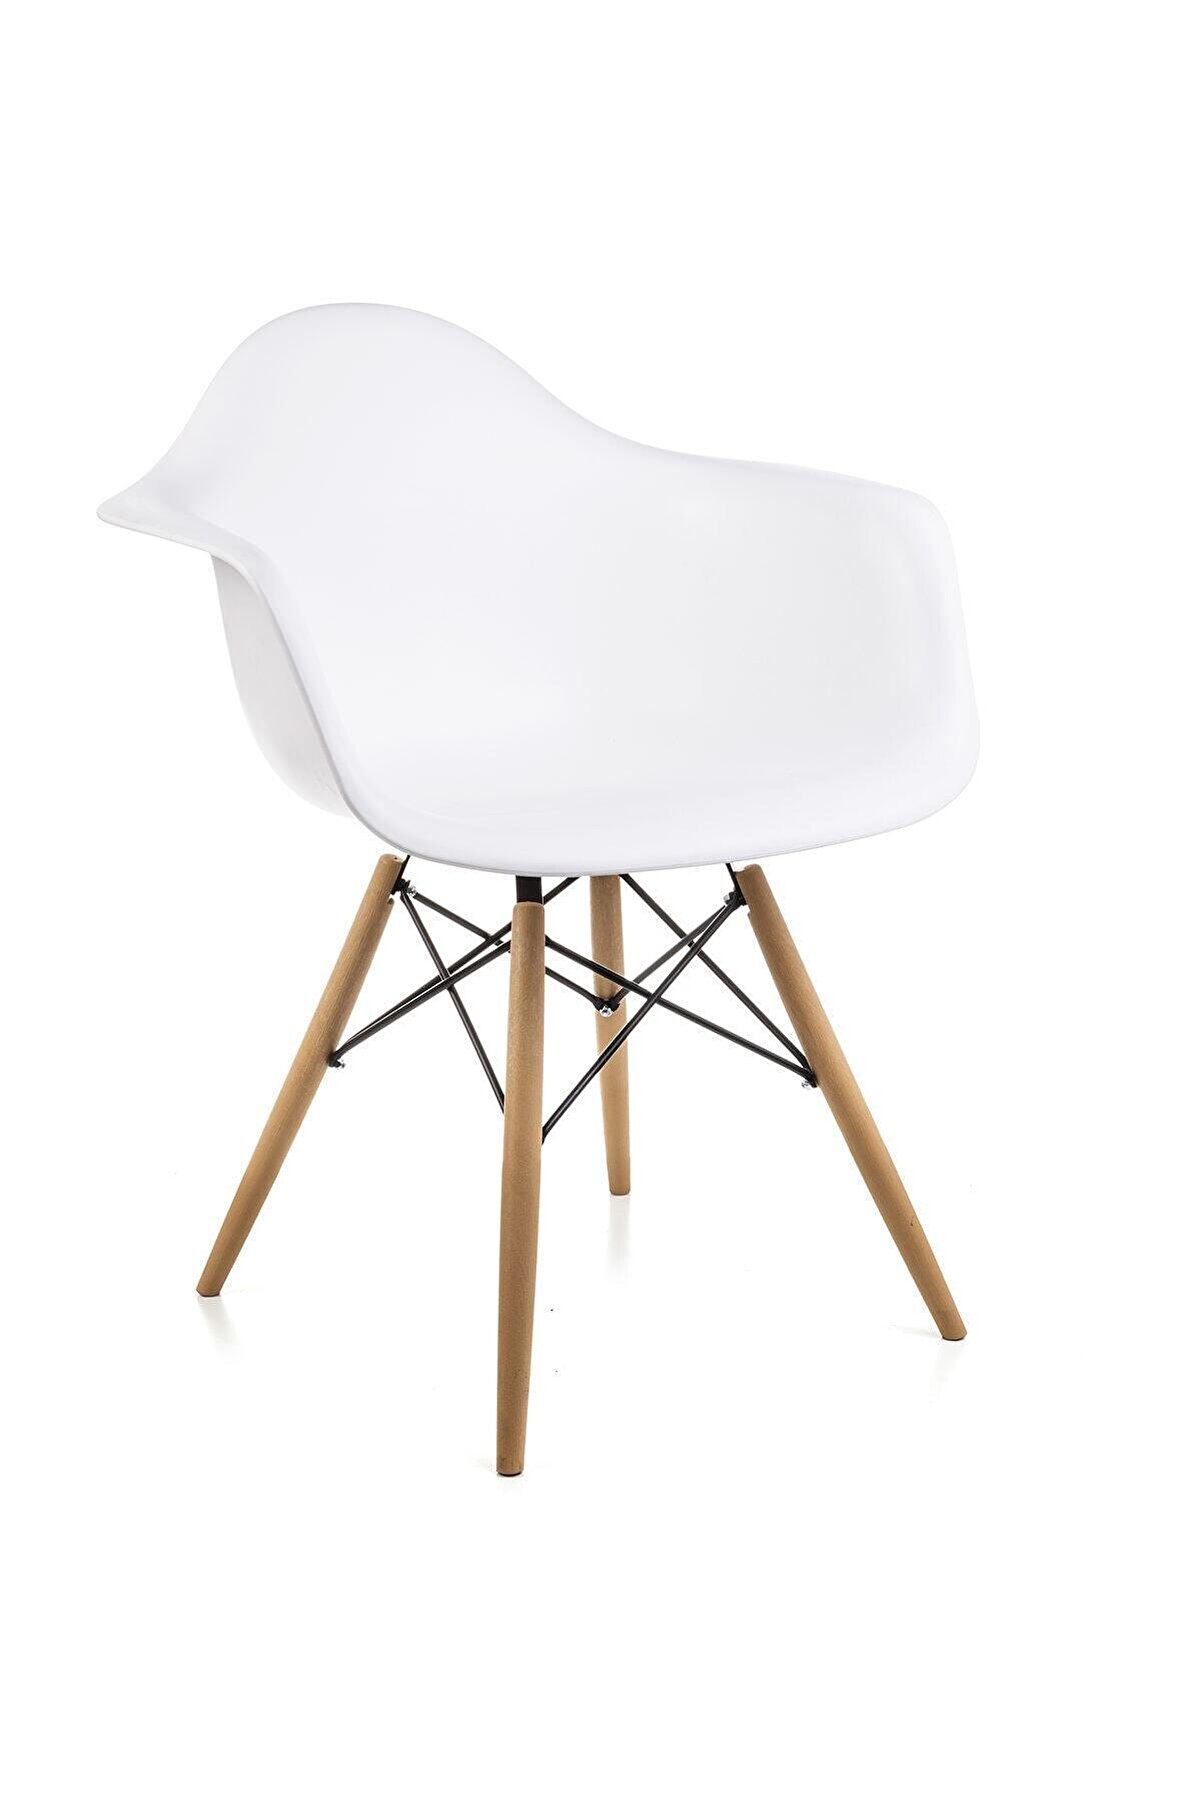 Dorcia Home Kolçaklı Beyaz Eames Sandalye - Cafe Balkon Mutfak Sandalyesi